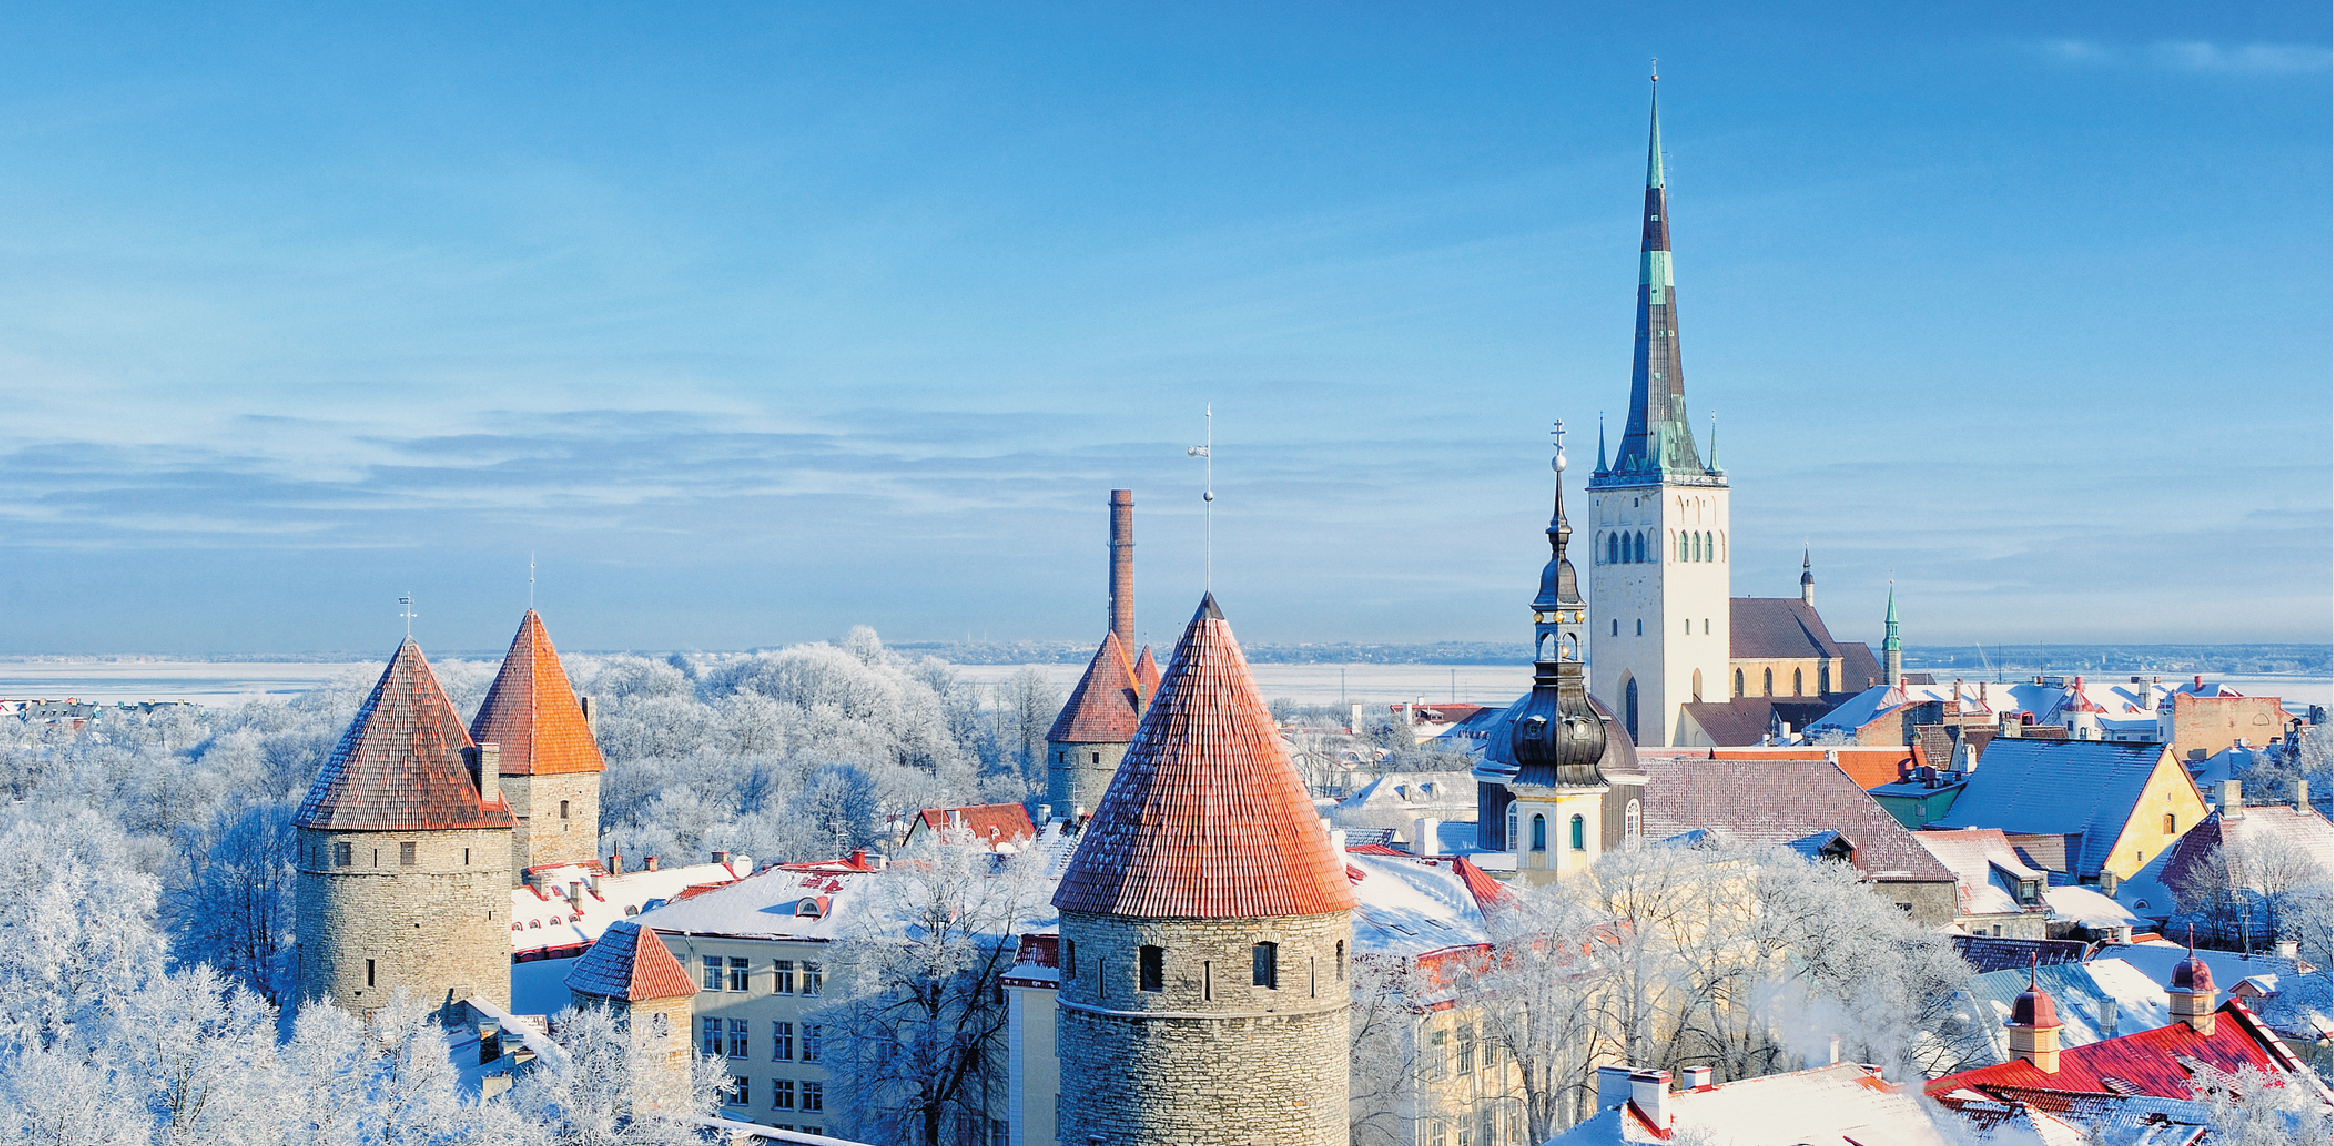 Eesti majandus on kasvanud üle jätkusuutliku taseme kolm aastat järjest